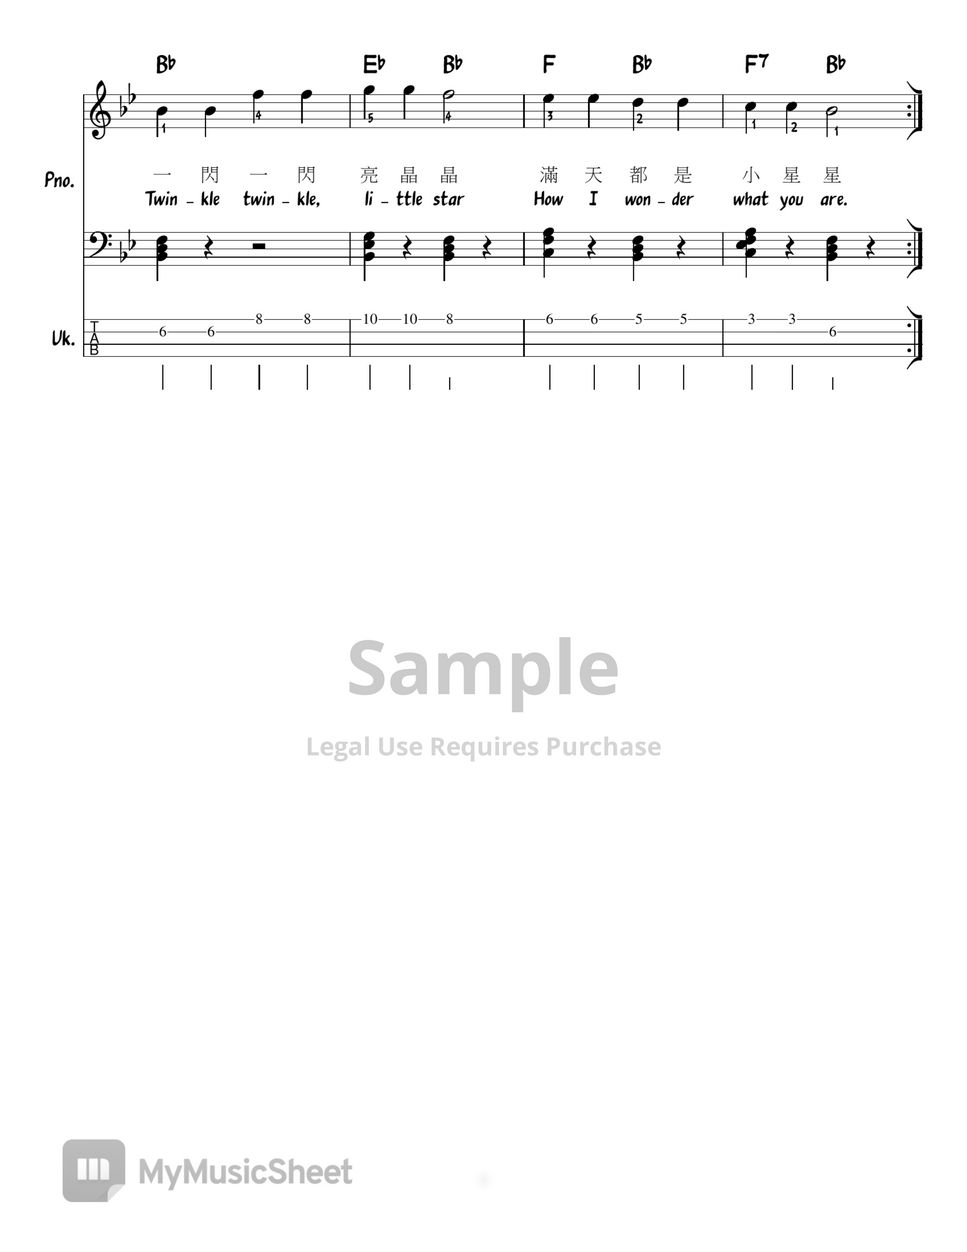 Mozart - Twinkle twinkle little stars in all 12 keys (Chord/Melody/Piano/Ukulele tab) (Lead Sheet)